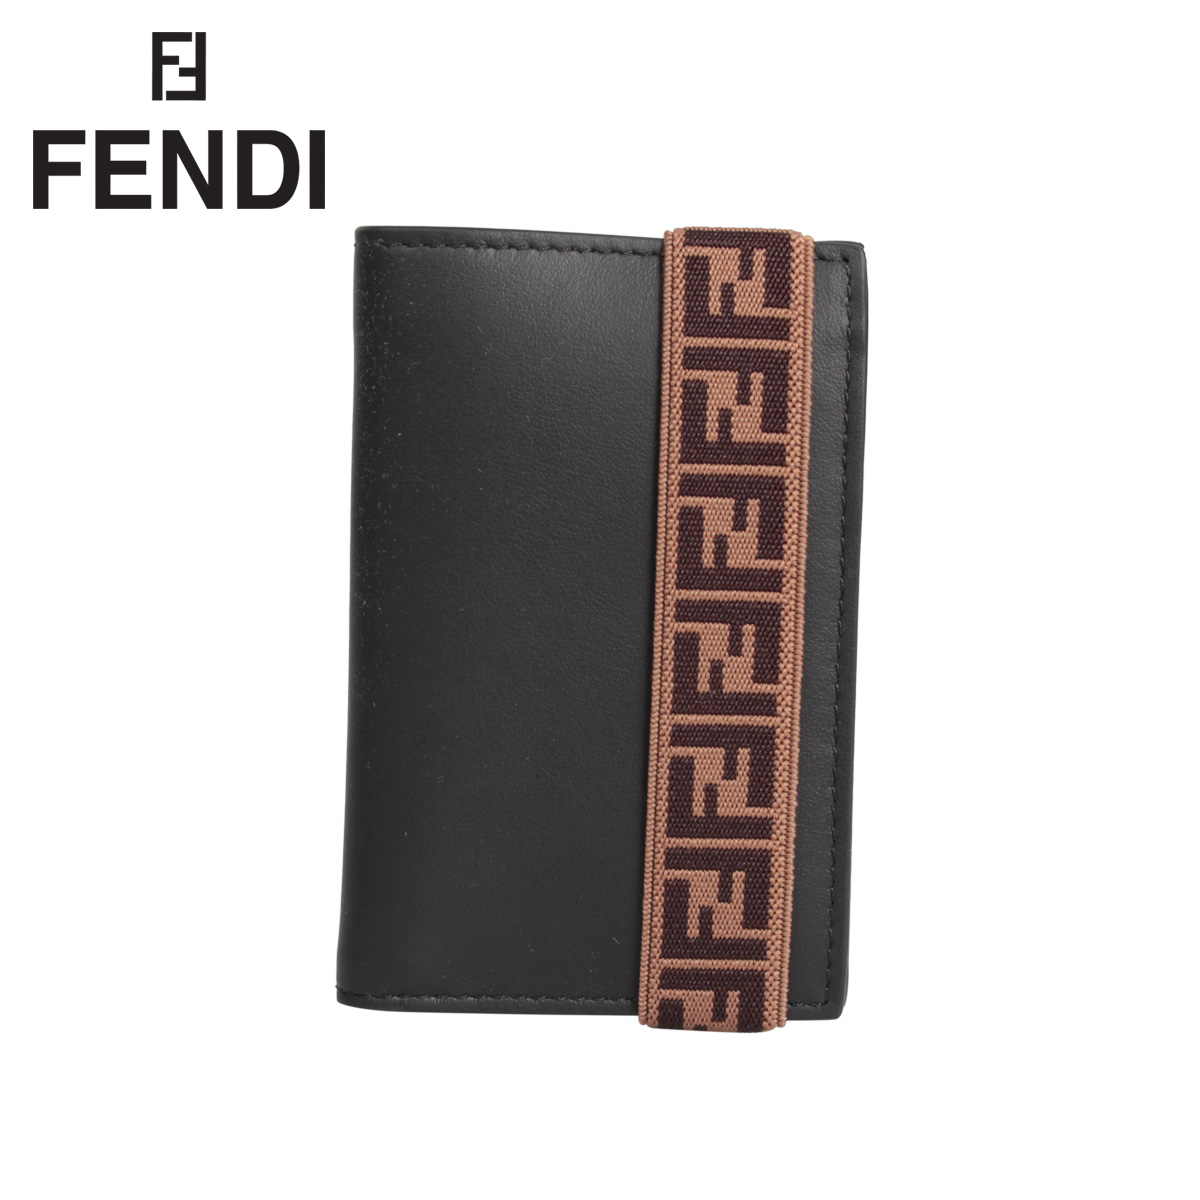 【楽天市場】フェンディ FENDI カードケース パスケース 名刺入れ メンズ CARD CASE ブラック 黒 7M0265 A8VC